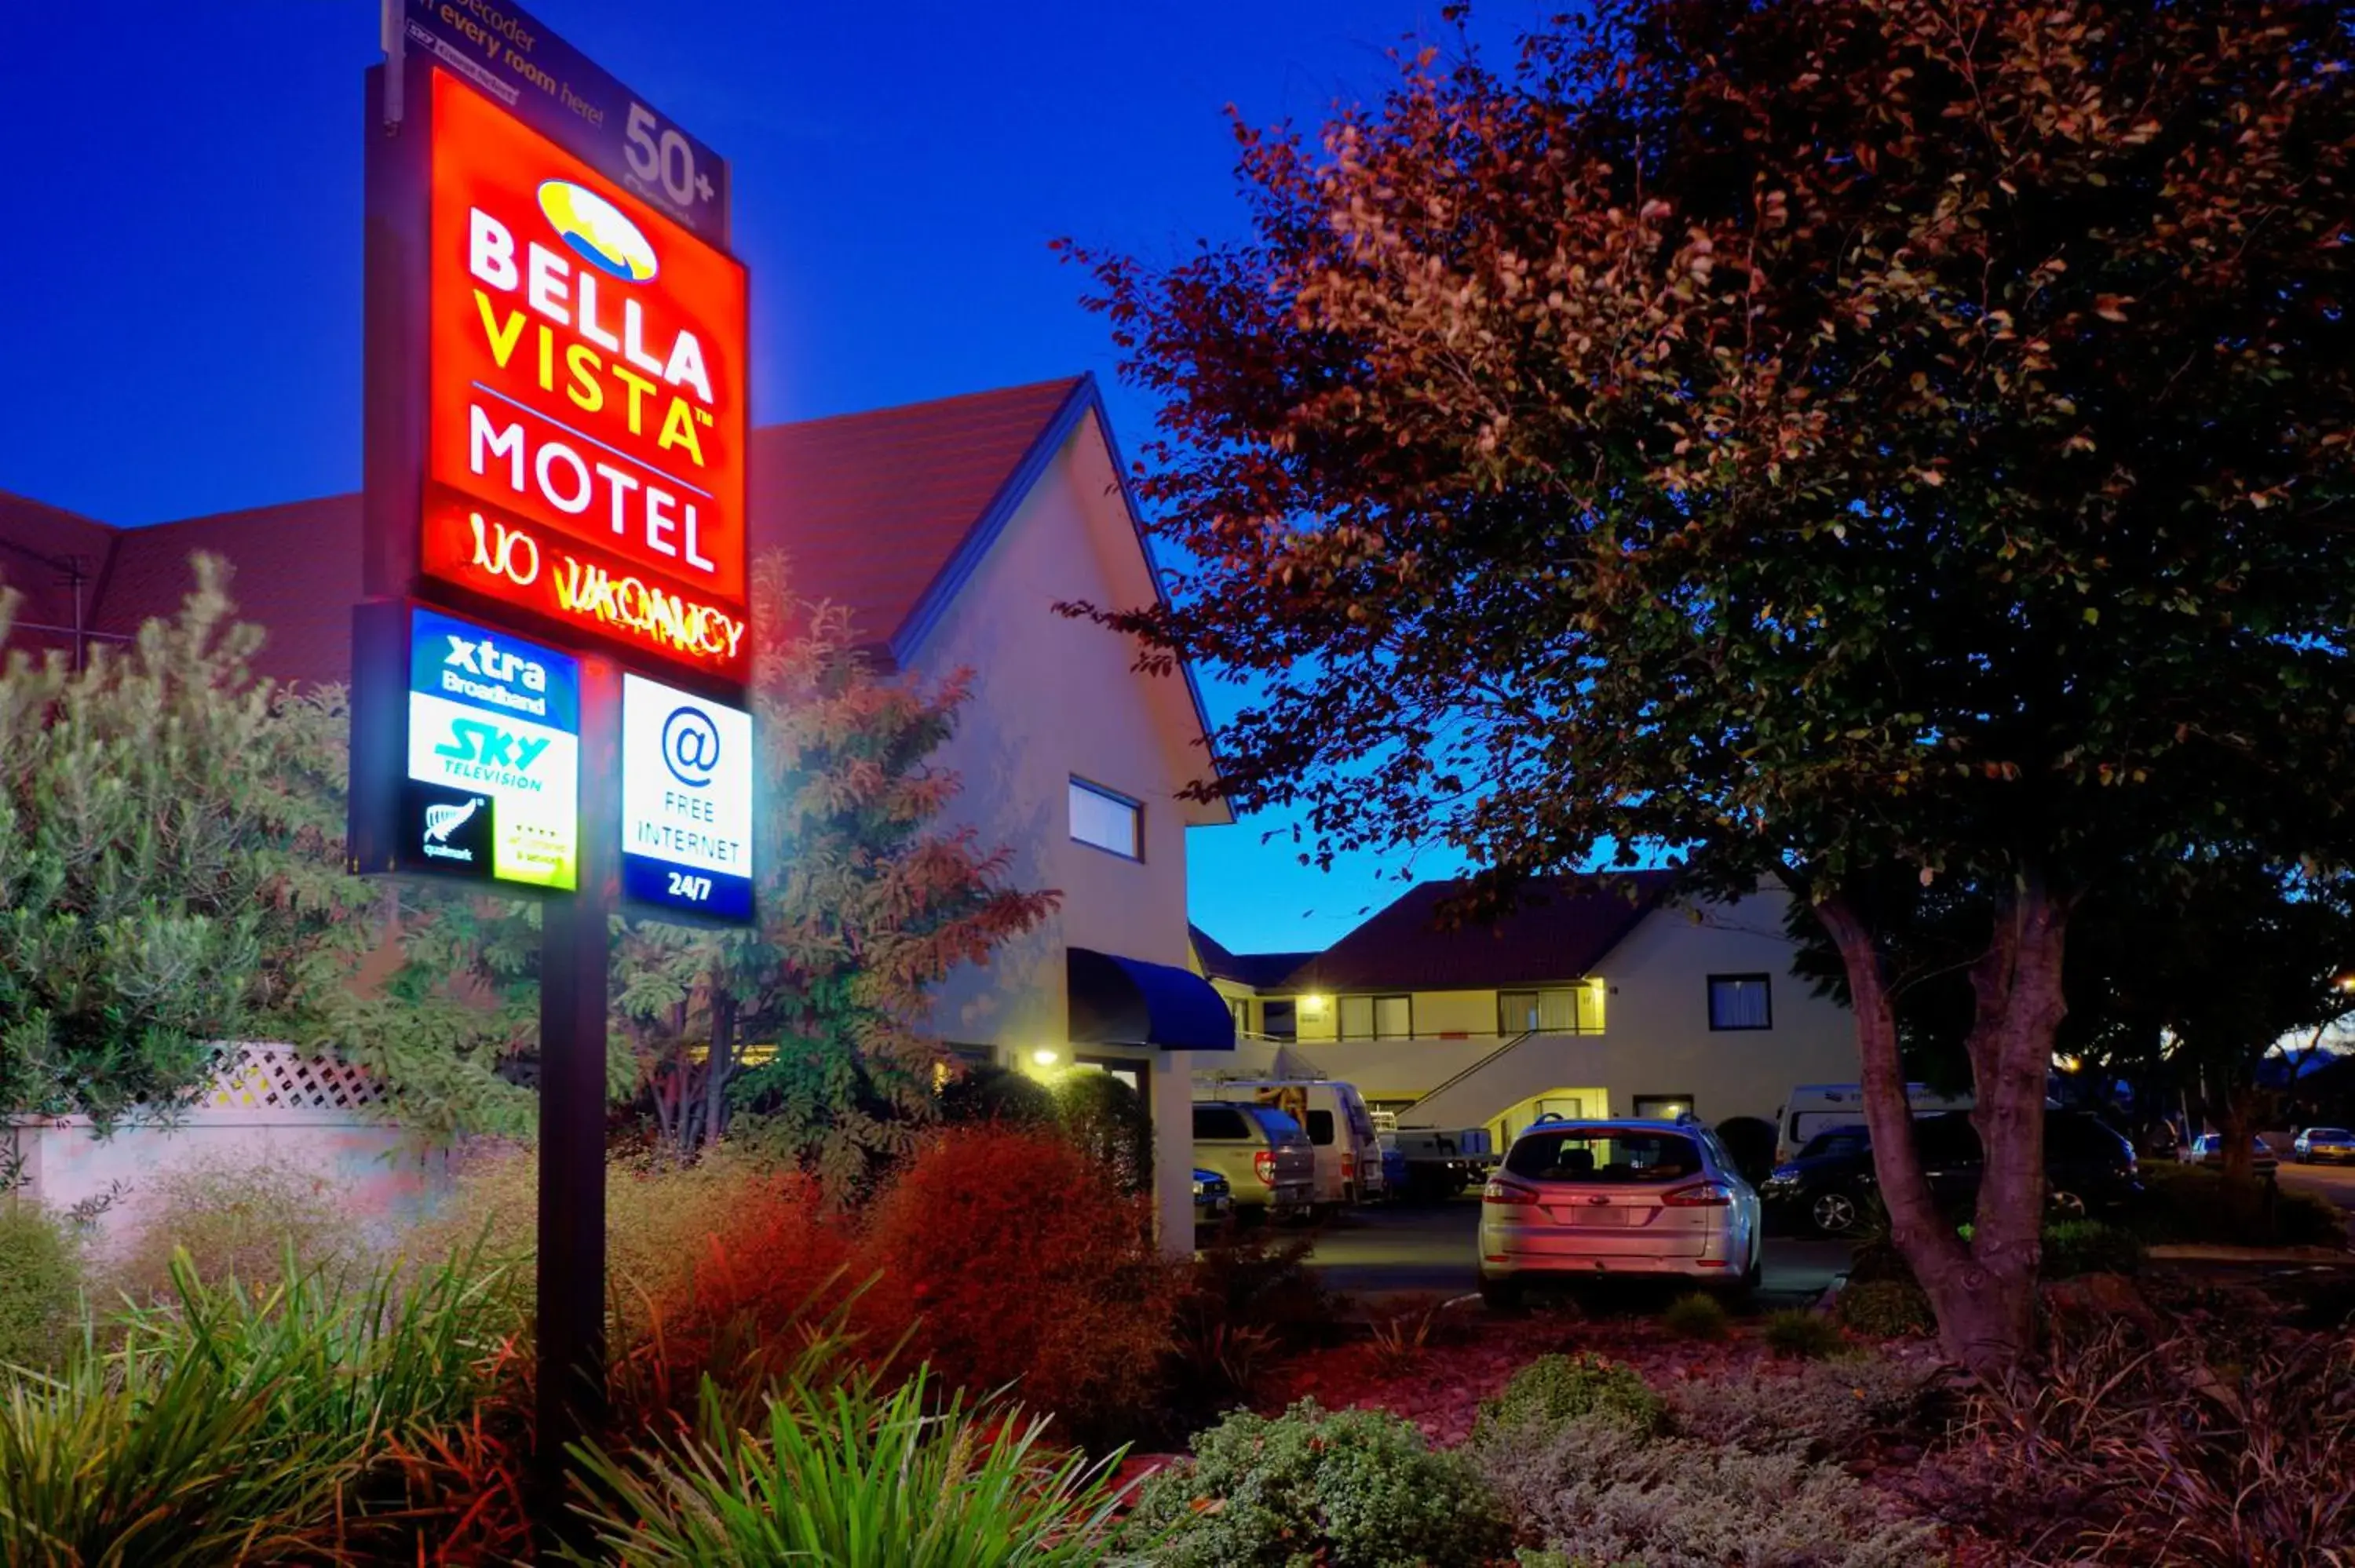 Property logo or sign, Property Building in Bella Vista Motel Blenheim